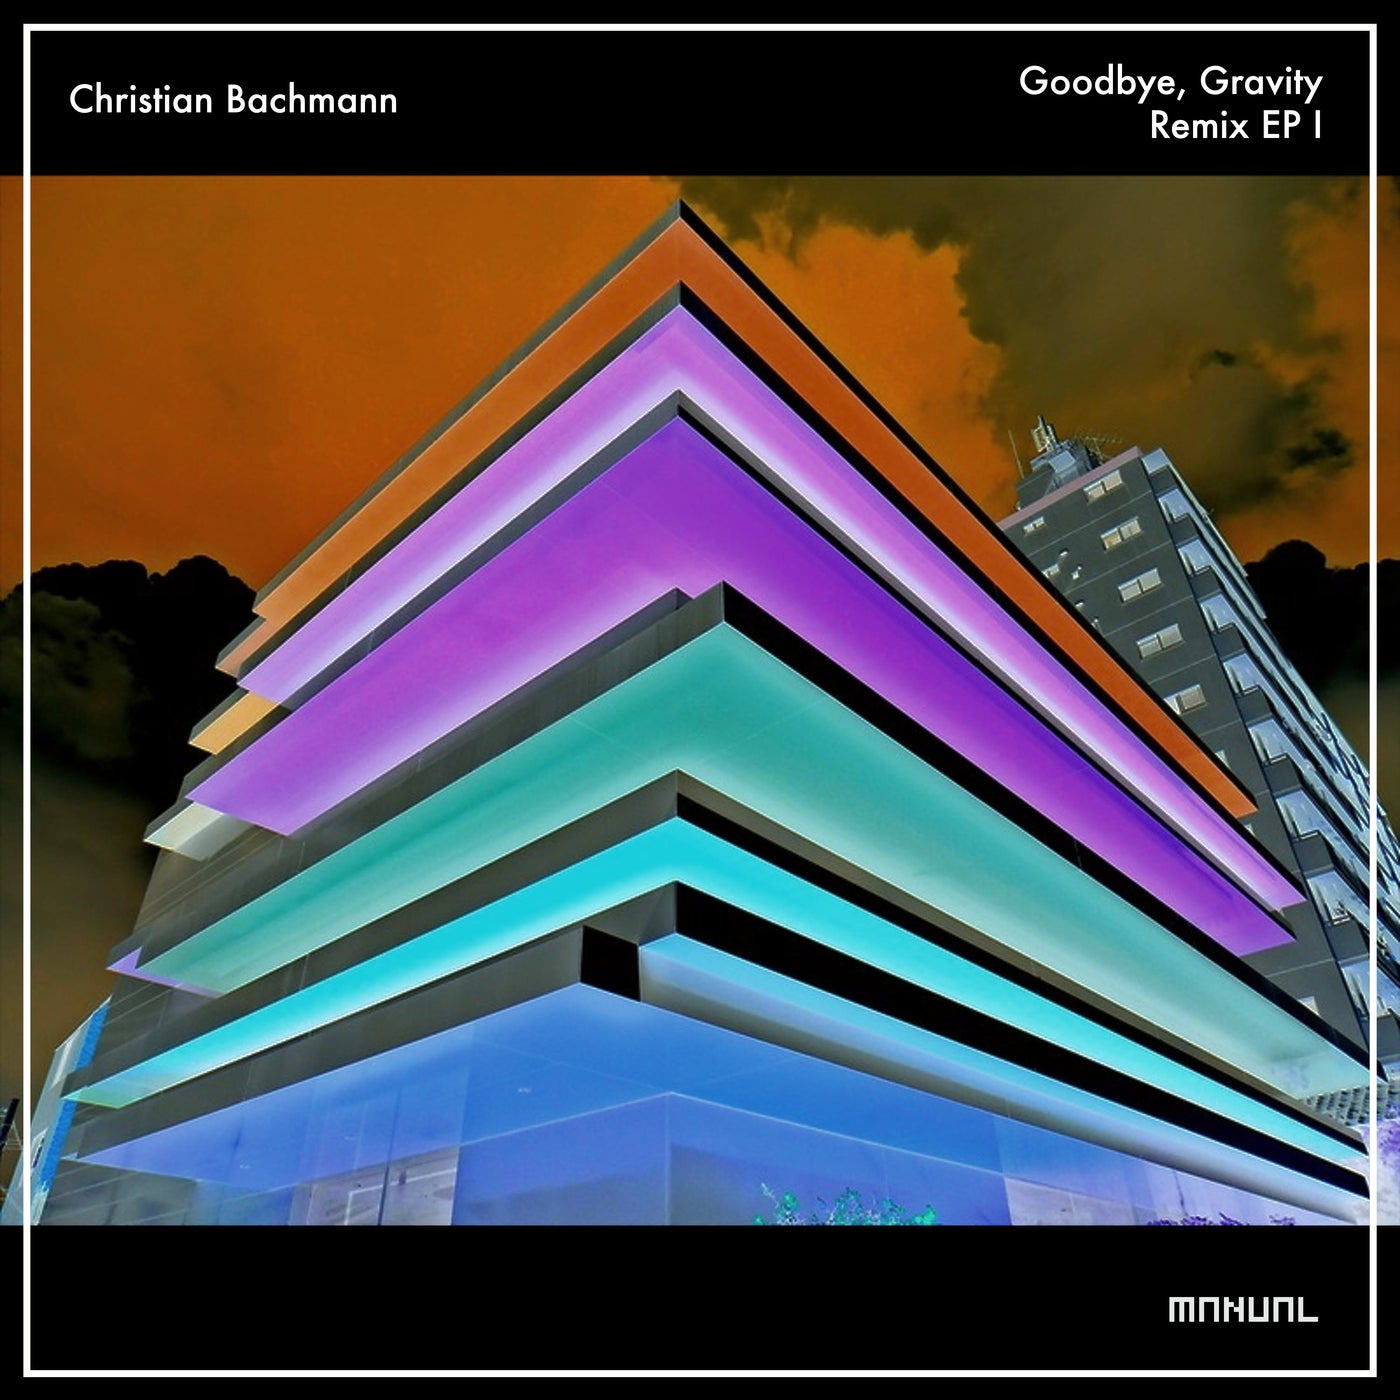 Christian Bachmann – Goodbye, Gravity – Remix EP 1 [MAN339]